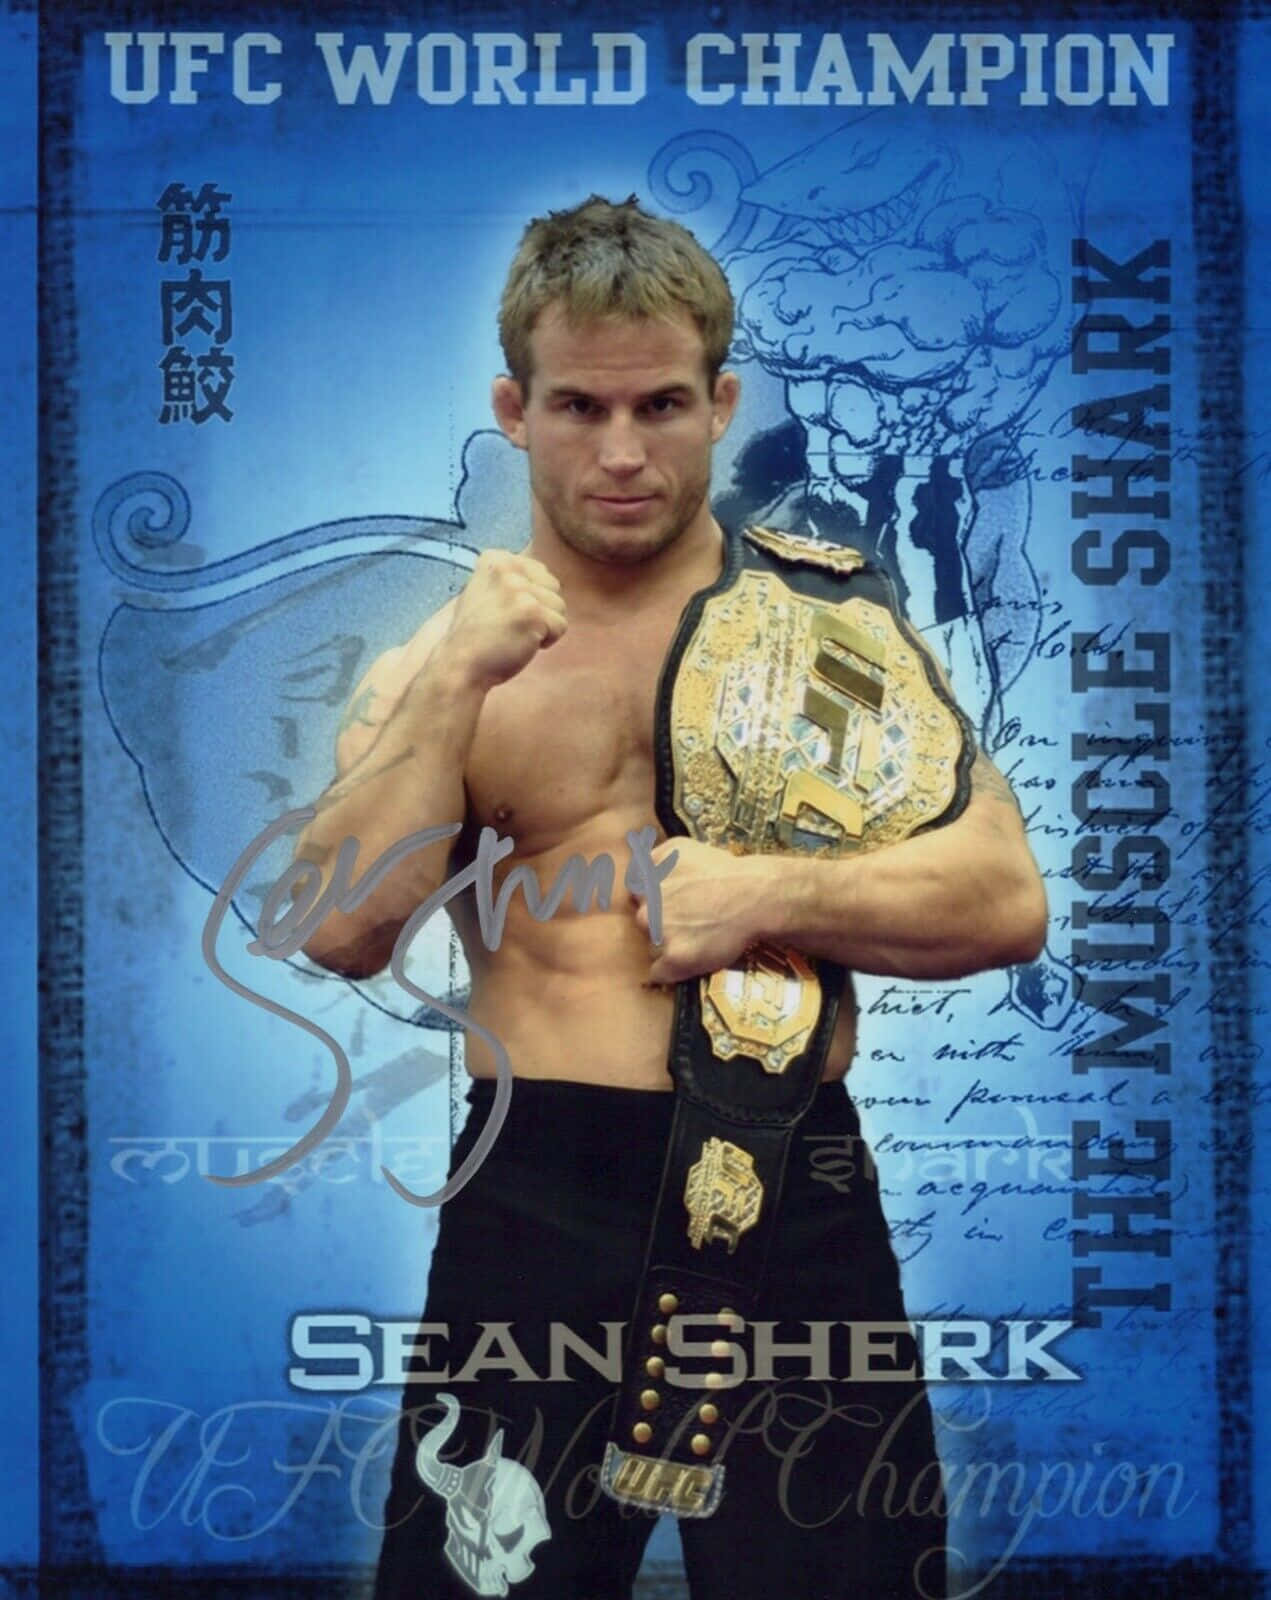 Former Ufc World Champion Sean Sherk Picture